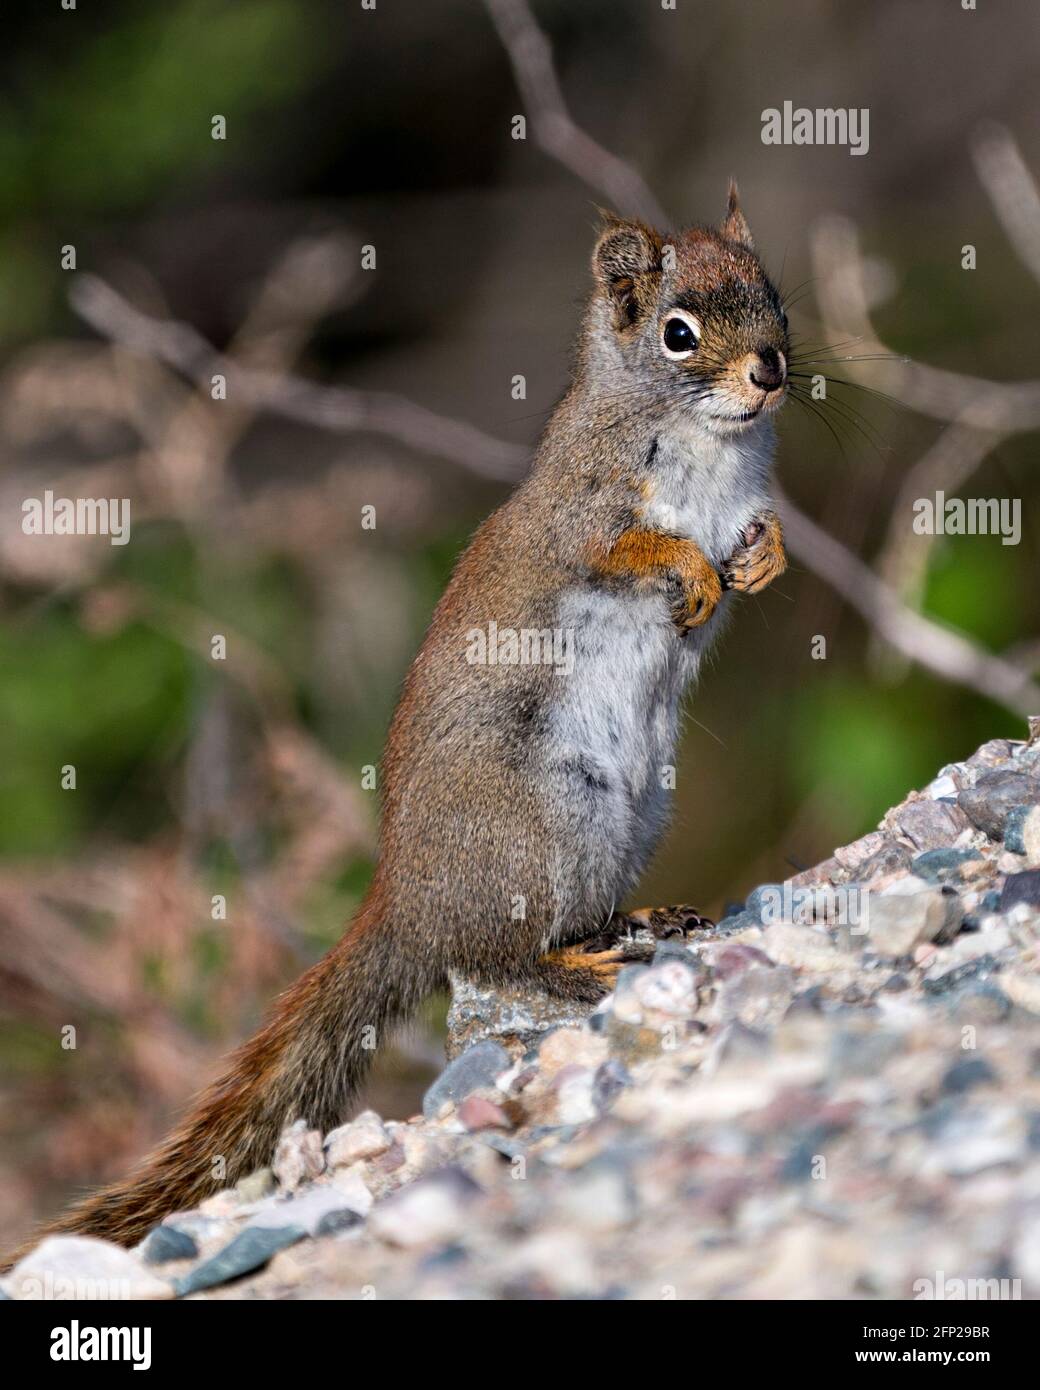 Nahaufnahme des Eichhörnchen-Profils, das auf Schotter steht, mit einem unscharfen Hintergrund in seiner Umgebung und seinem Lebensraum, der buschigen Schwanz und braunes Fell zeigt. Bild. Pi Stockfoto